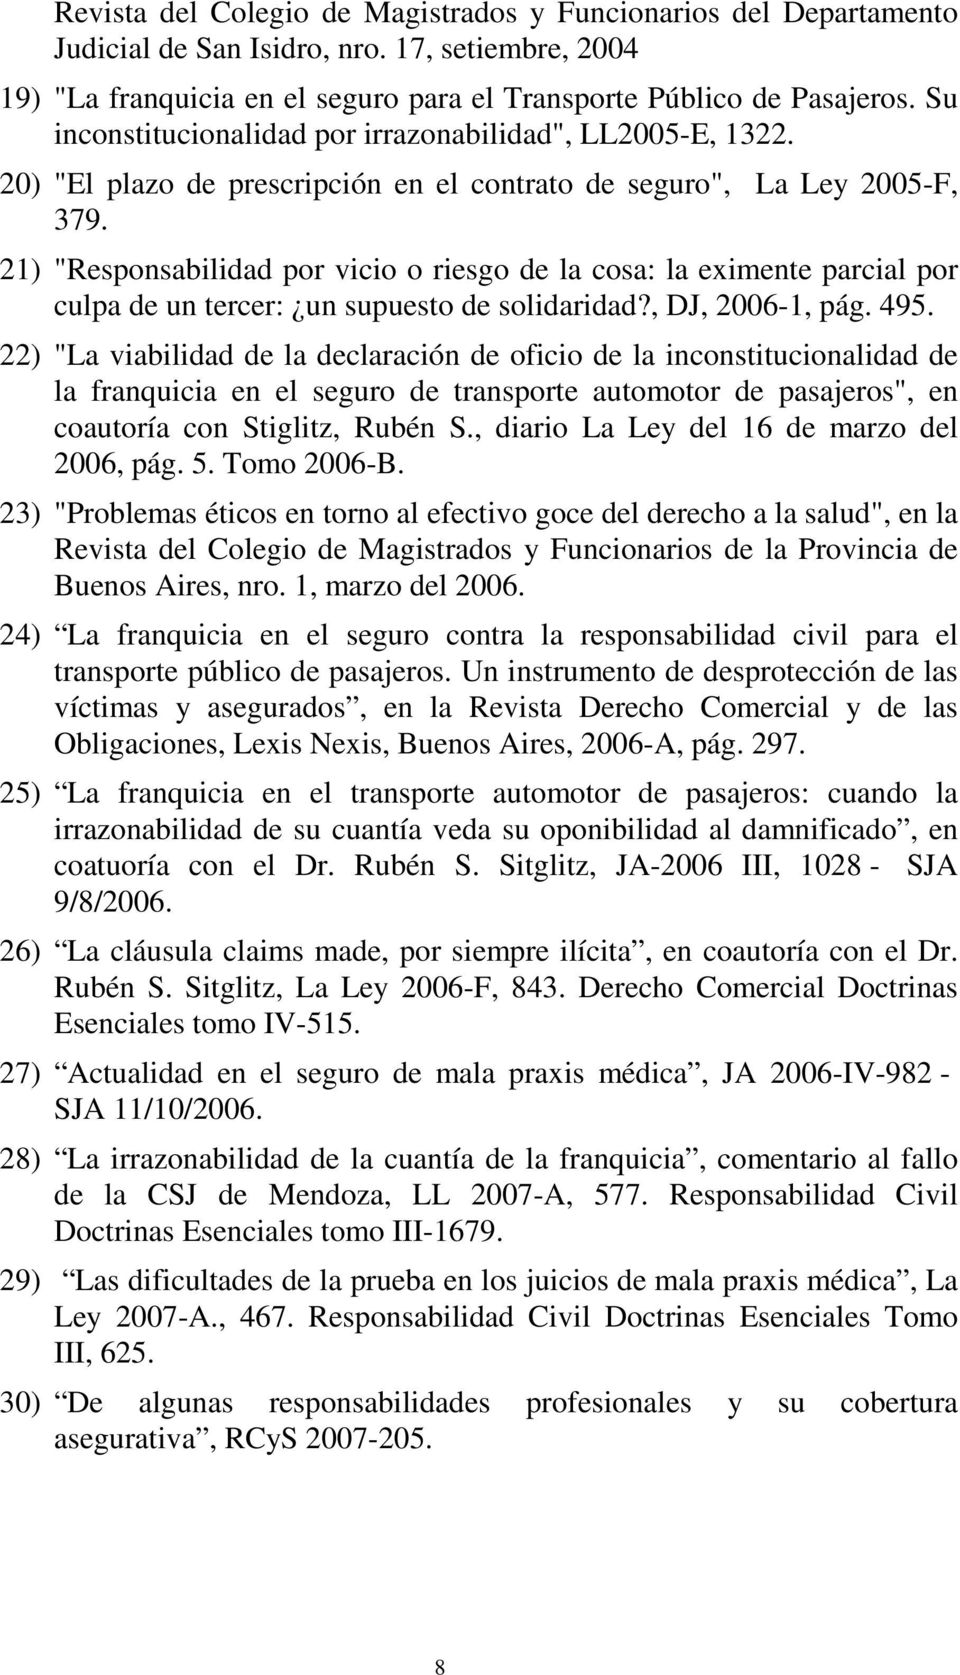 21) "Responsabilidad por vicio o riesgo de la cosa: la eximente parcial por culpa de un tercer: un supuesto de solidaridad?, DJ, 2006-1, pág. 495.